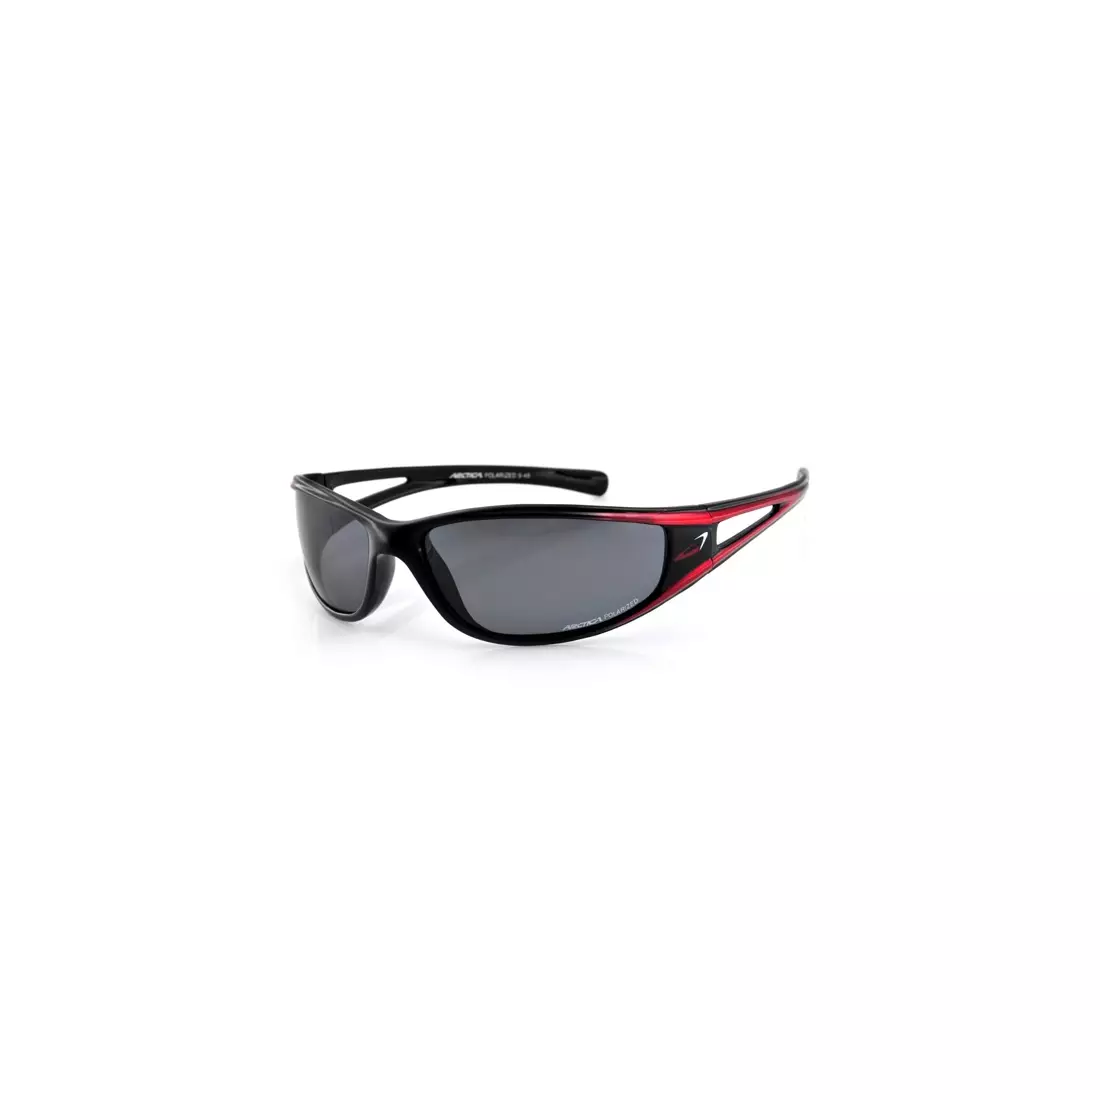 Sportovní brýle ARCTICA S-49 - barva: Černá a červená